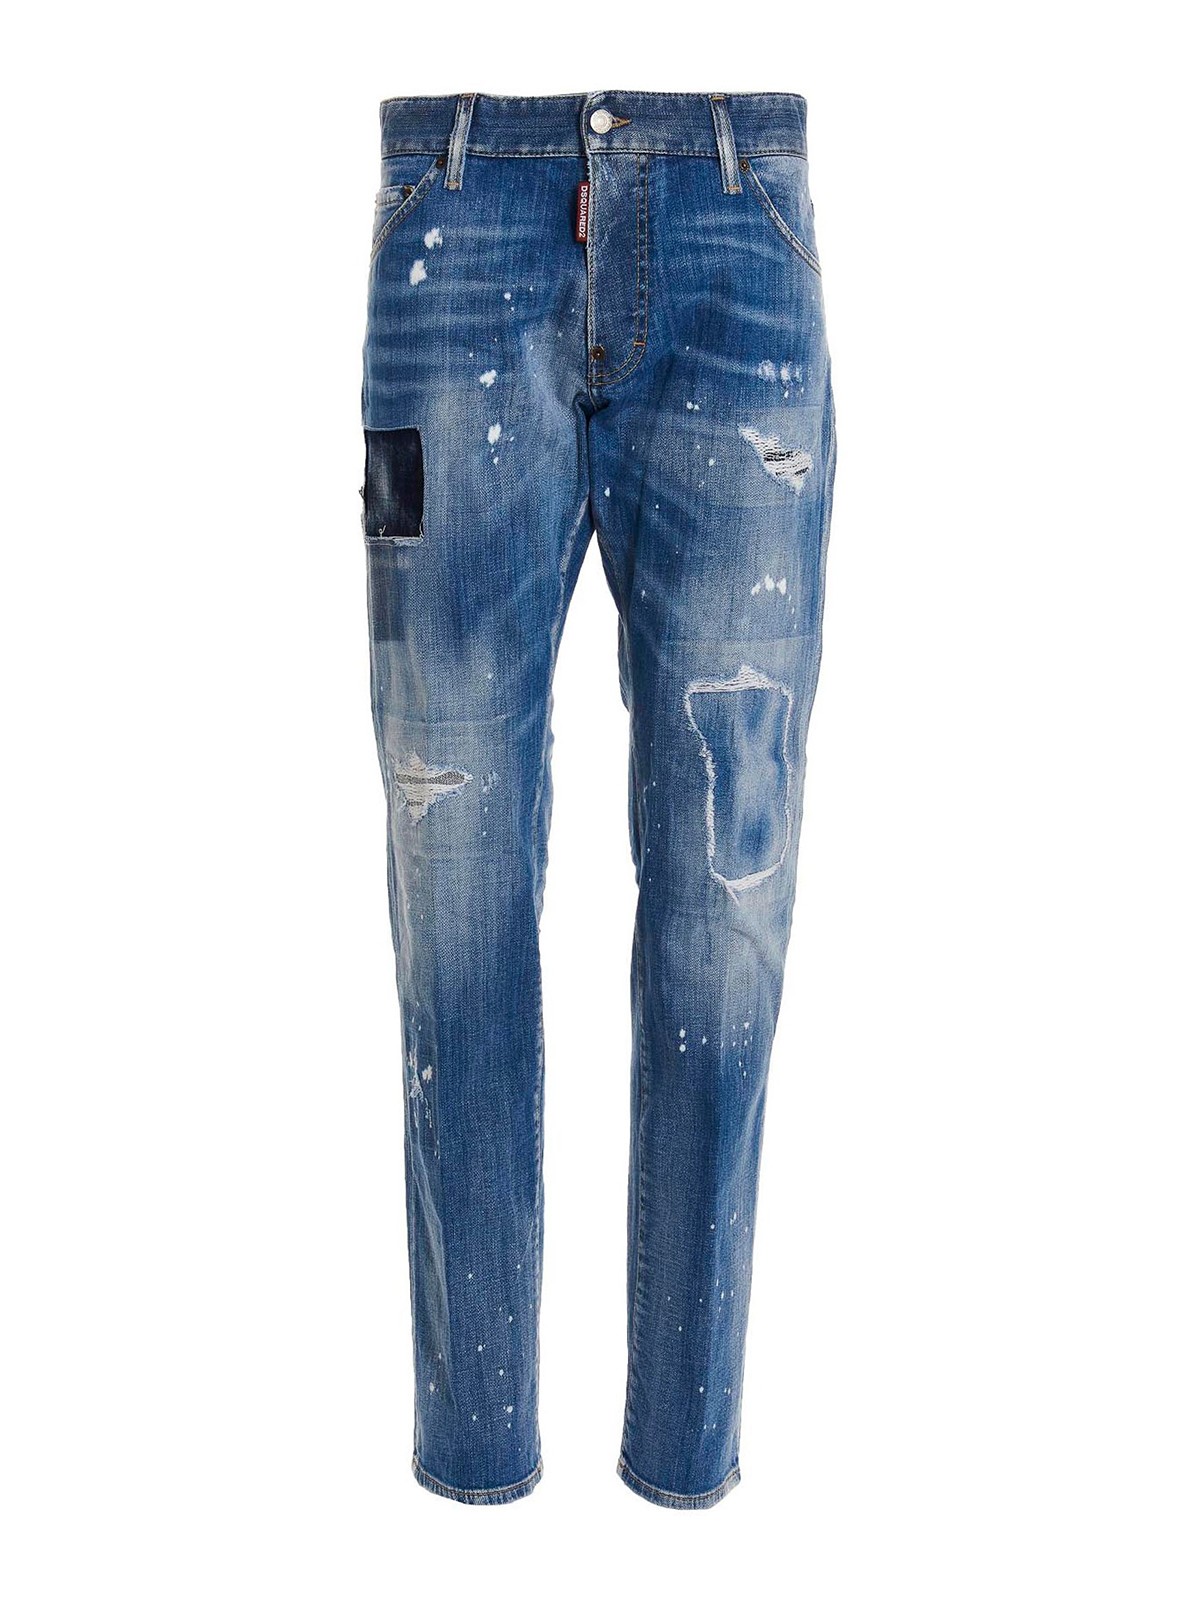 belasting Bondgenoot Ondoorzichtig Skinny jeans Dsquared2 - Jeans cool guy - S74LB1252S30342470 | iKRIX.com